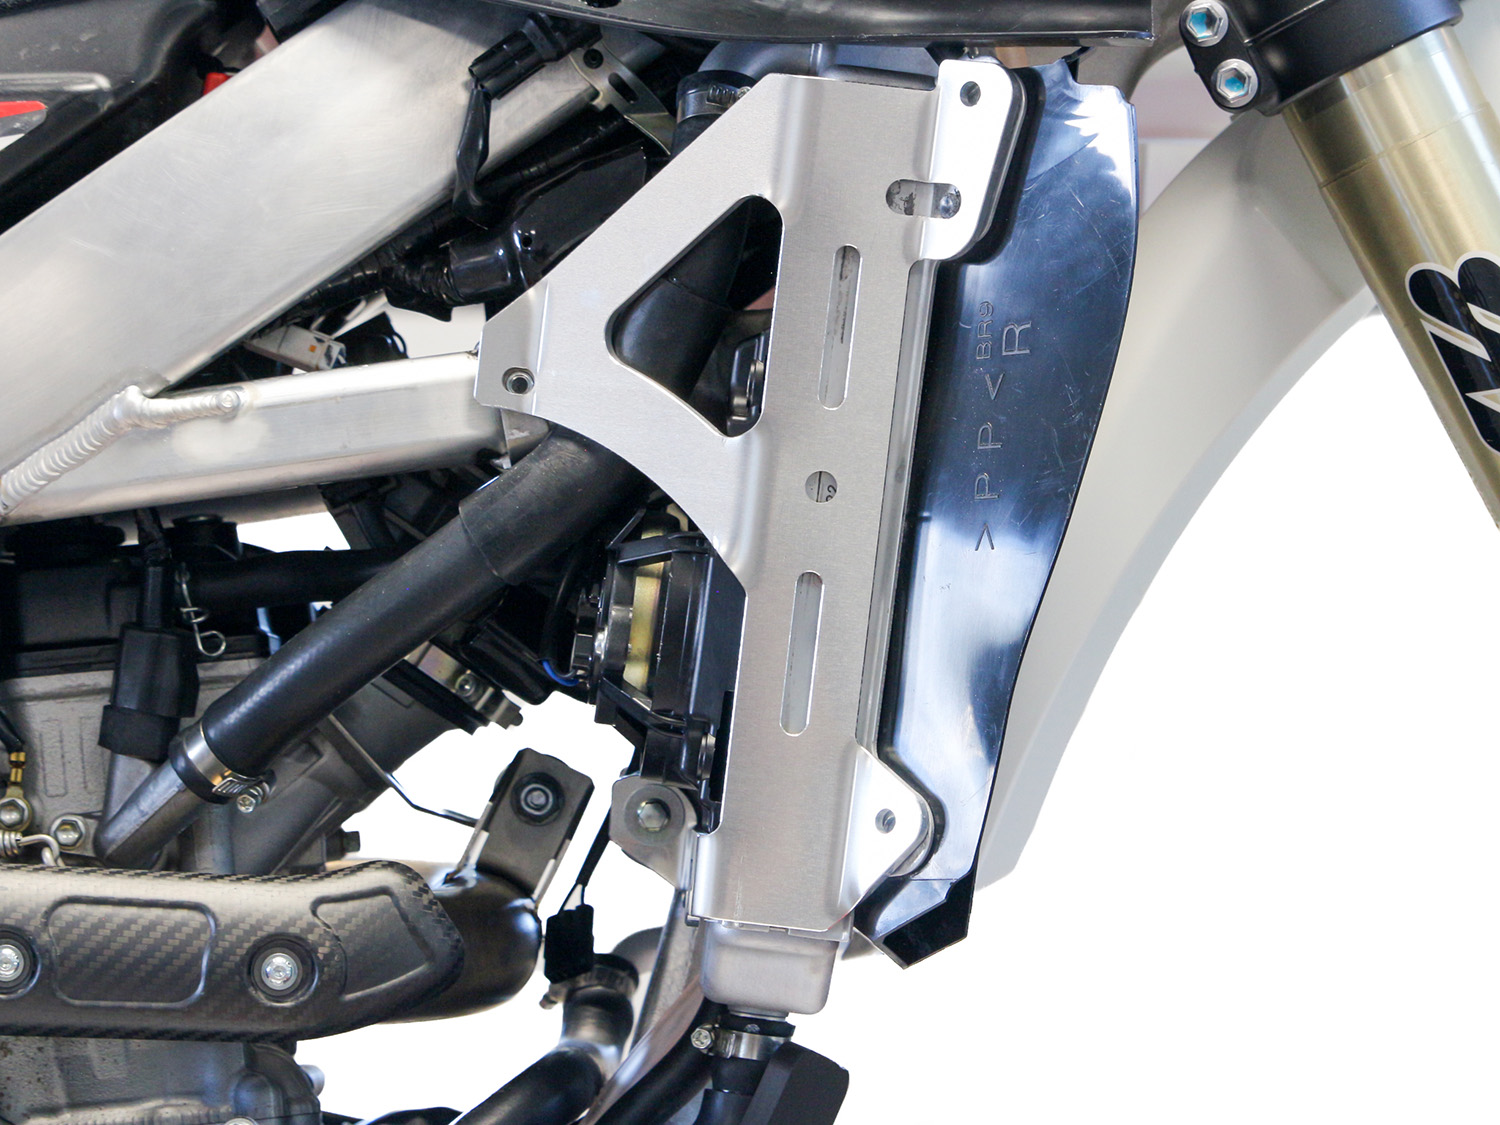 Vistazo Rápido: Nuevos protectores de radiador AXP Racing para Yamaha y Fantic off-road de cuatro tiempos